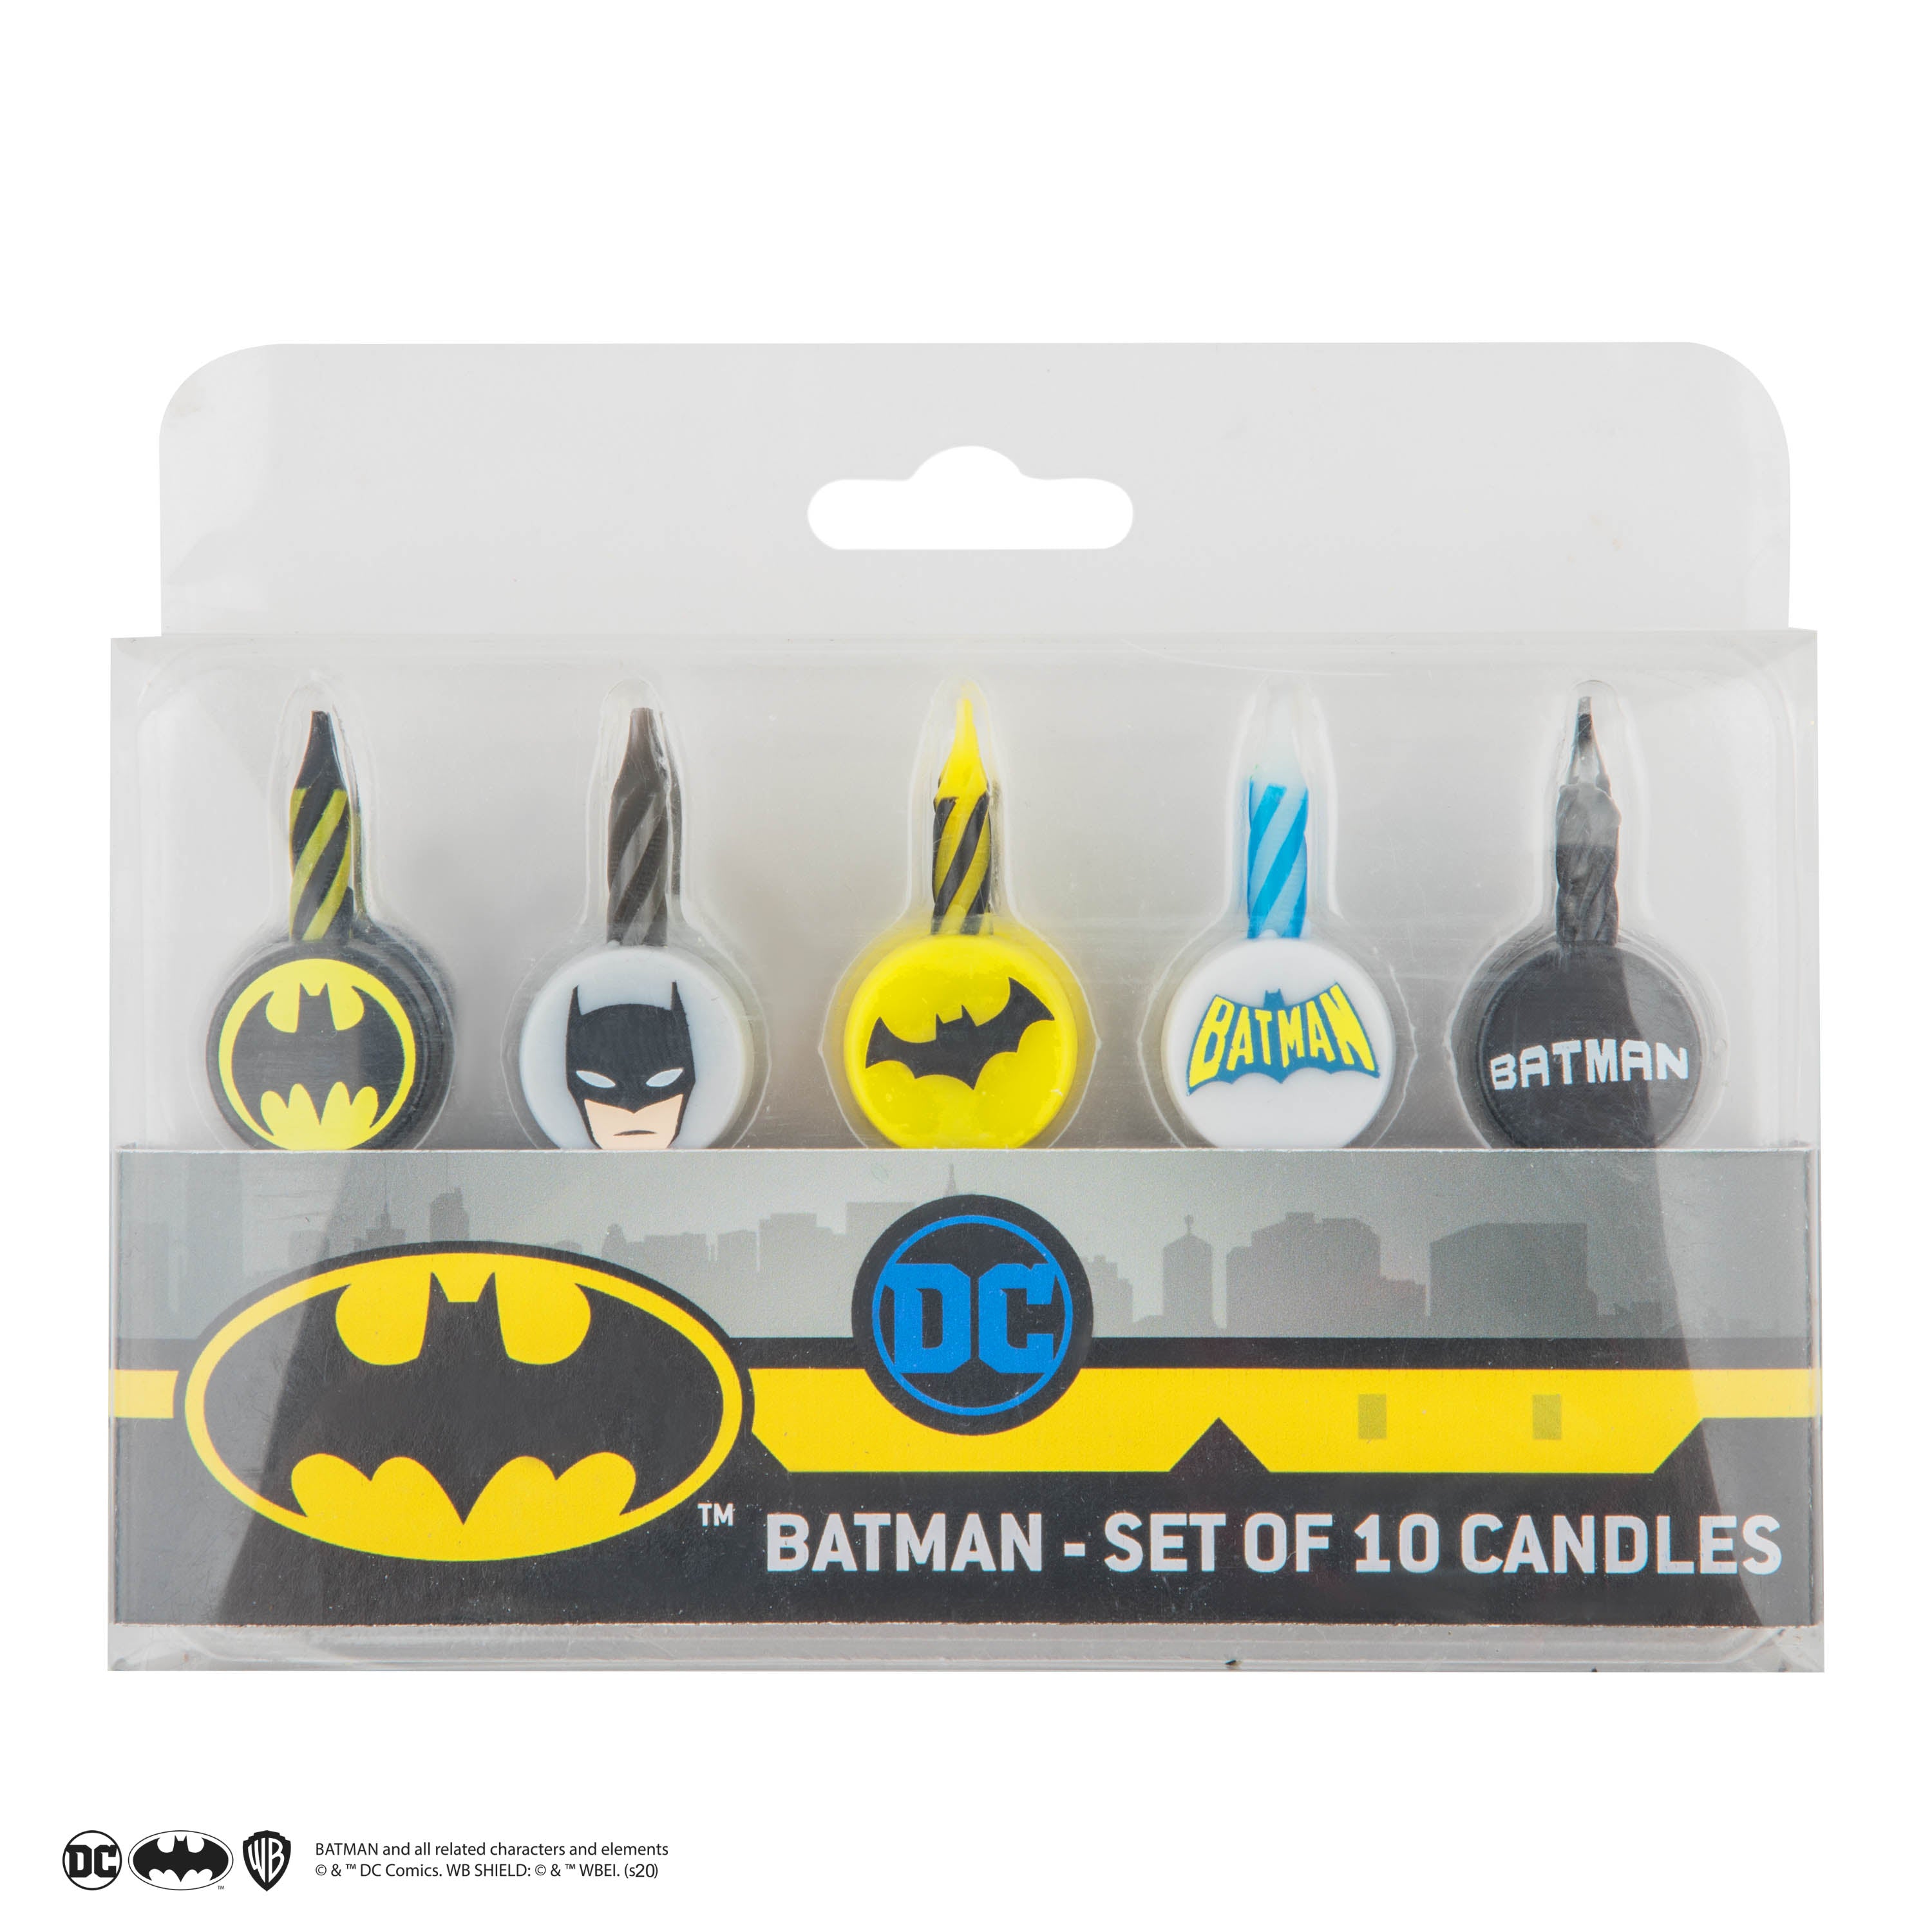 https://cinereplicas.com/cdn/shop/products/Candles-SetOf10-Batman-DC-Product-_4_4895205603882.jpg?v=1598946302